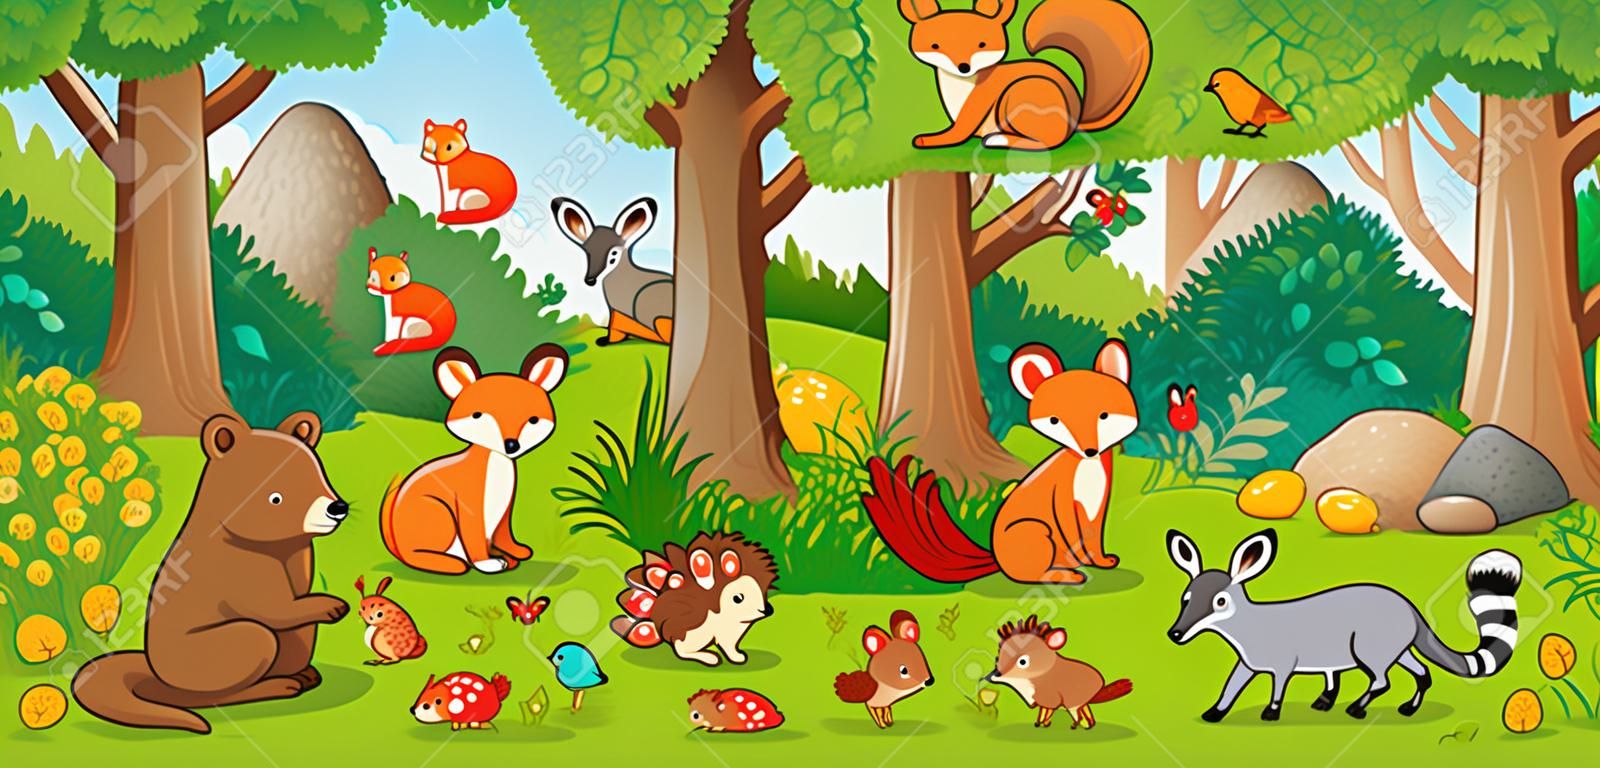 矢量图和儿童风格的可爱森林动物。一组在森林里的哺乳动物。以儿童风格收藏。